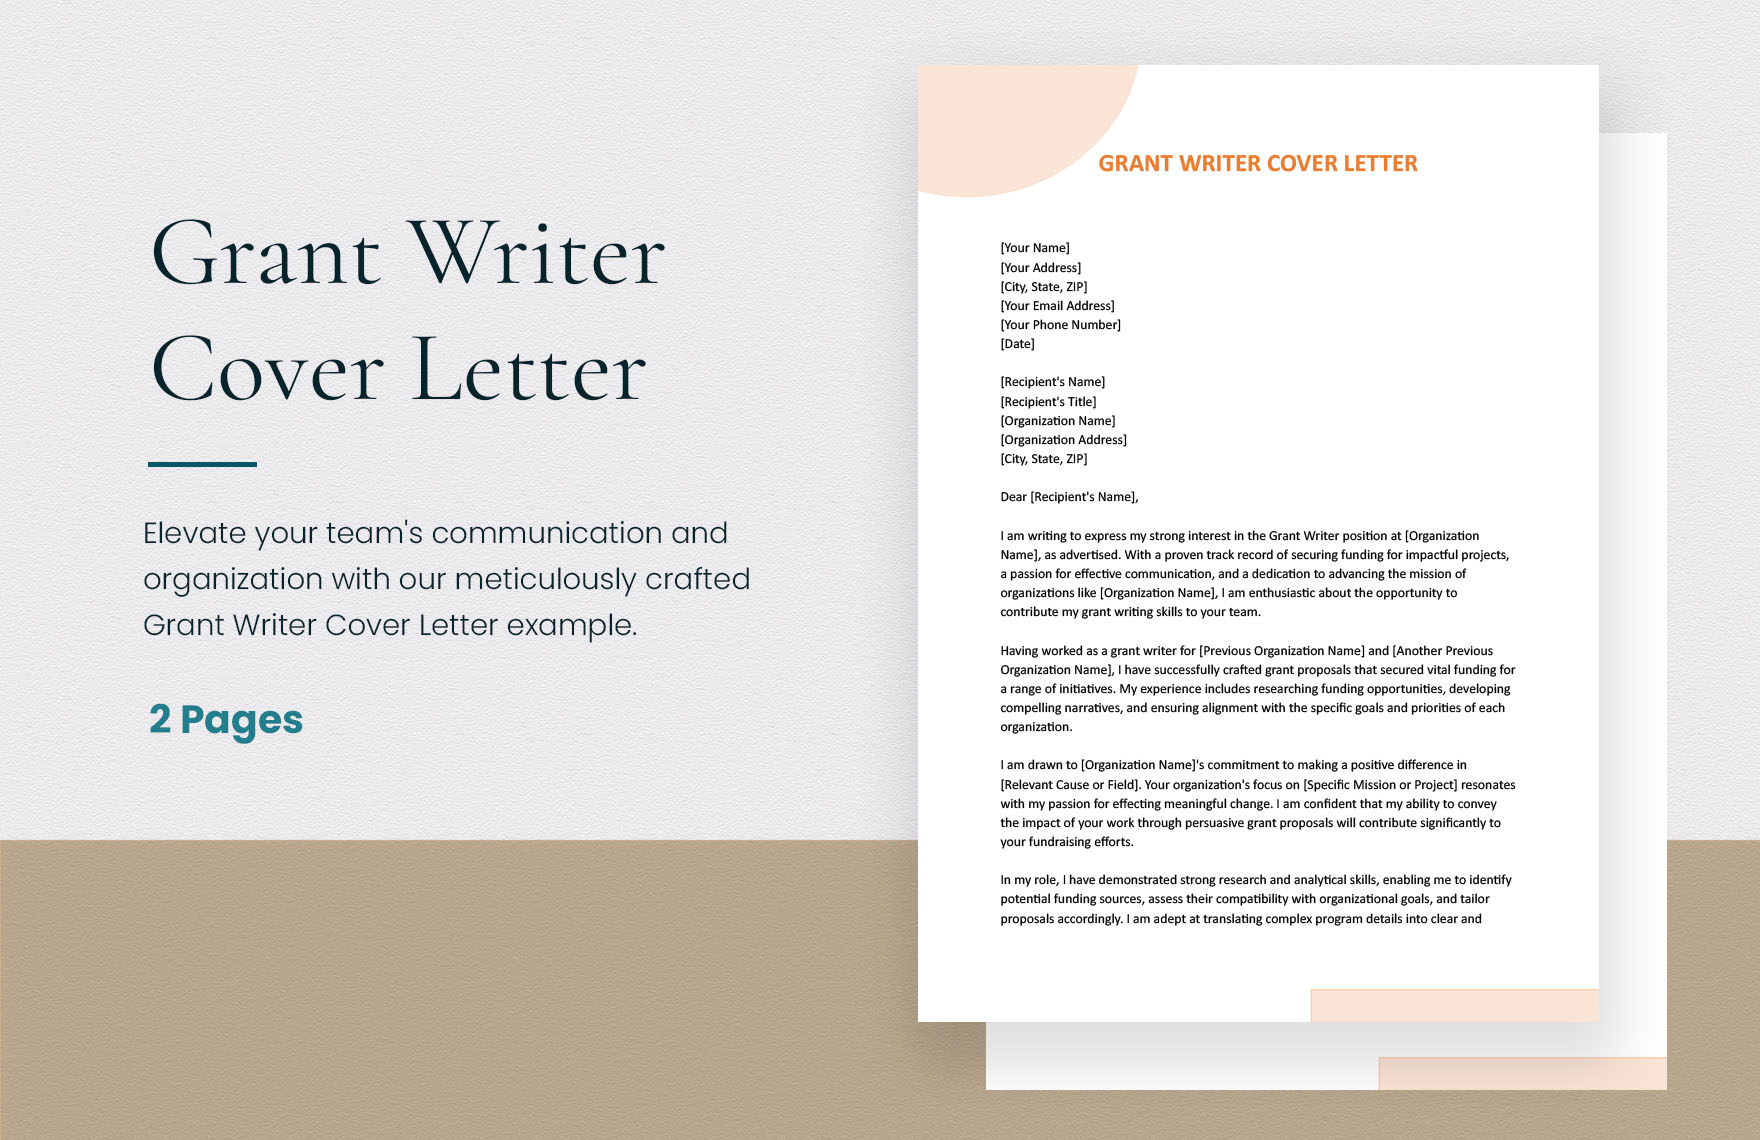 Grant Writer Cover Letter